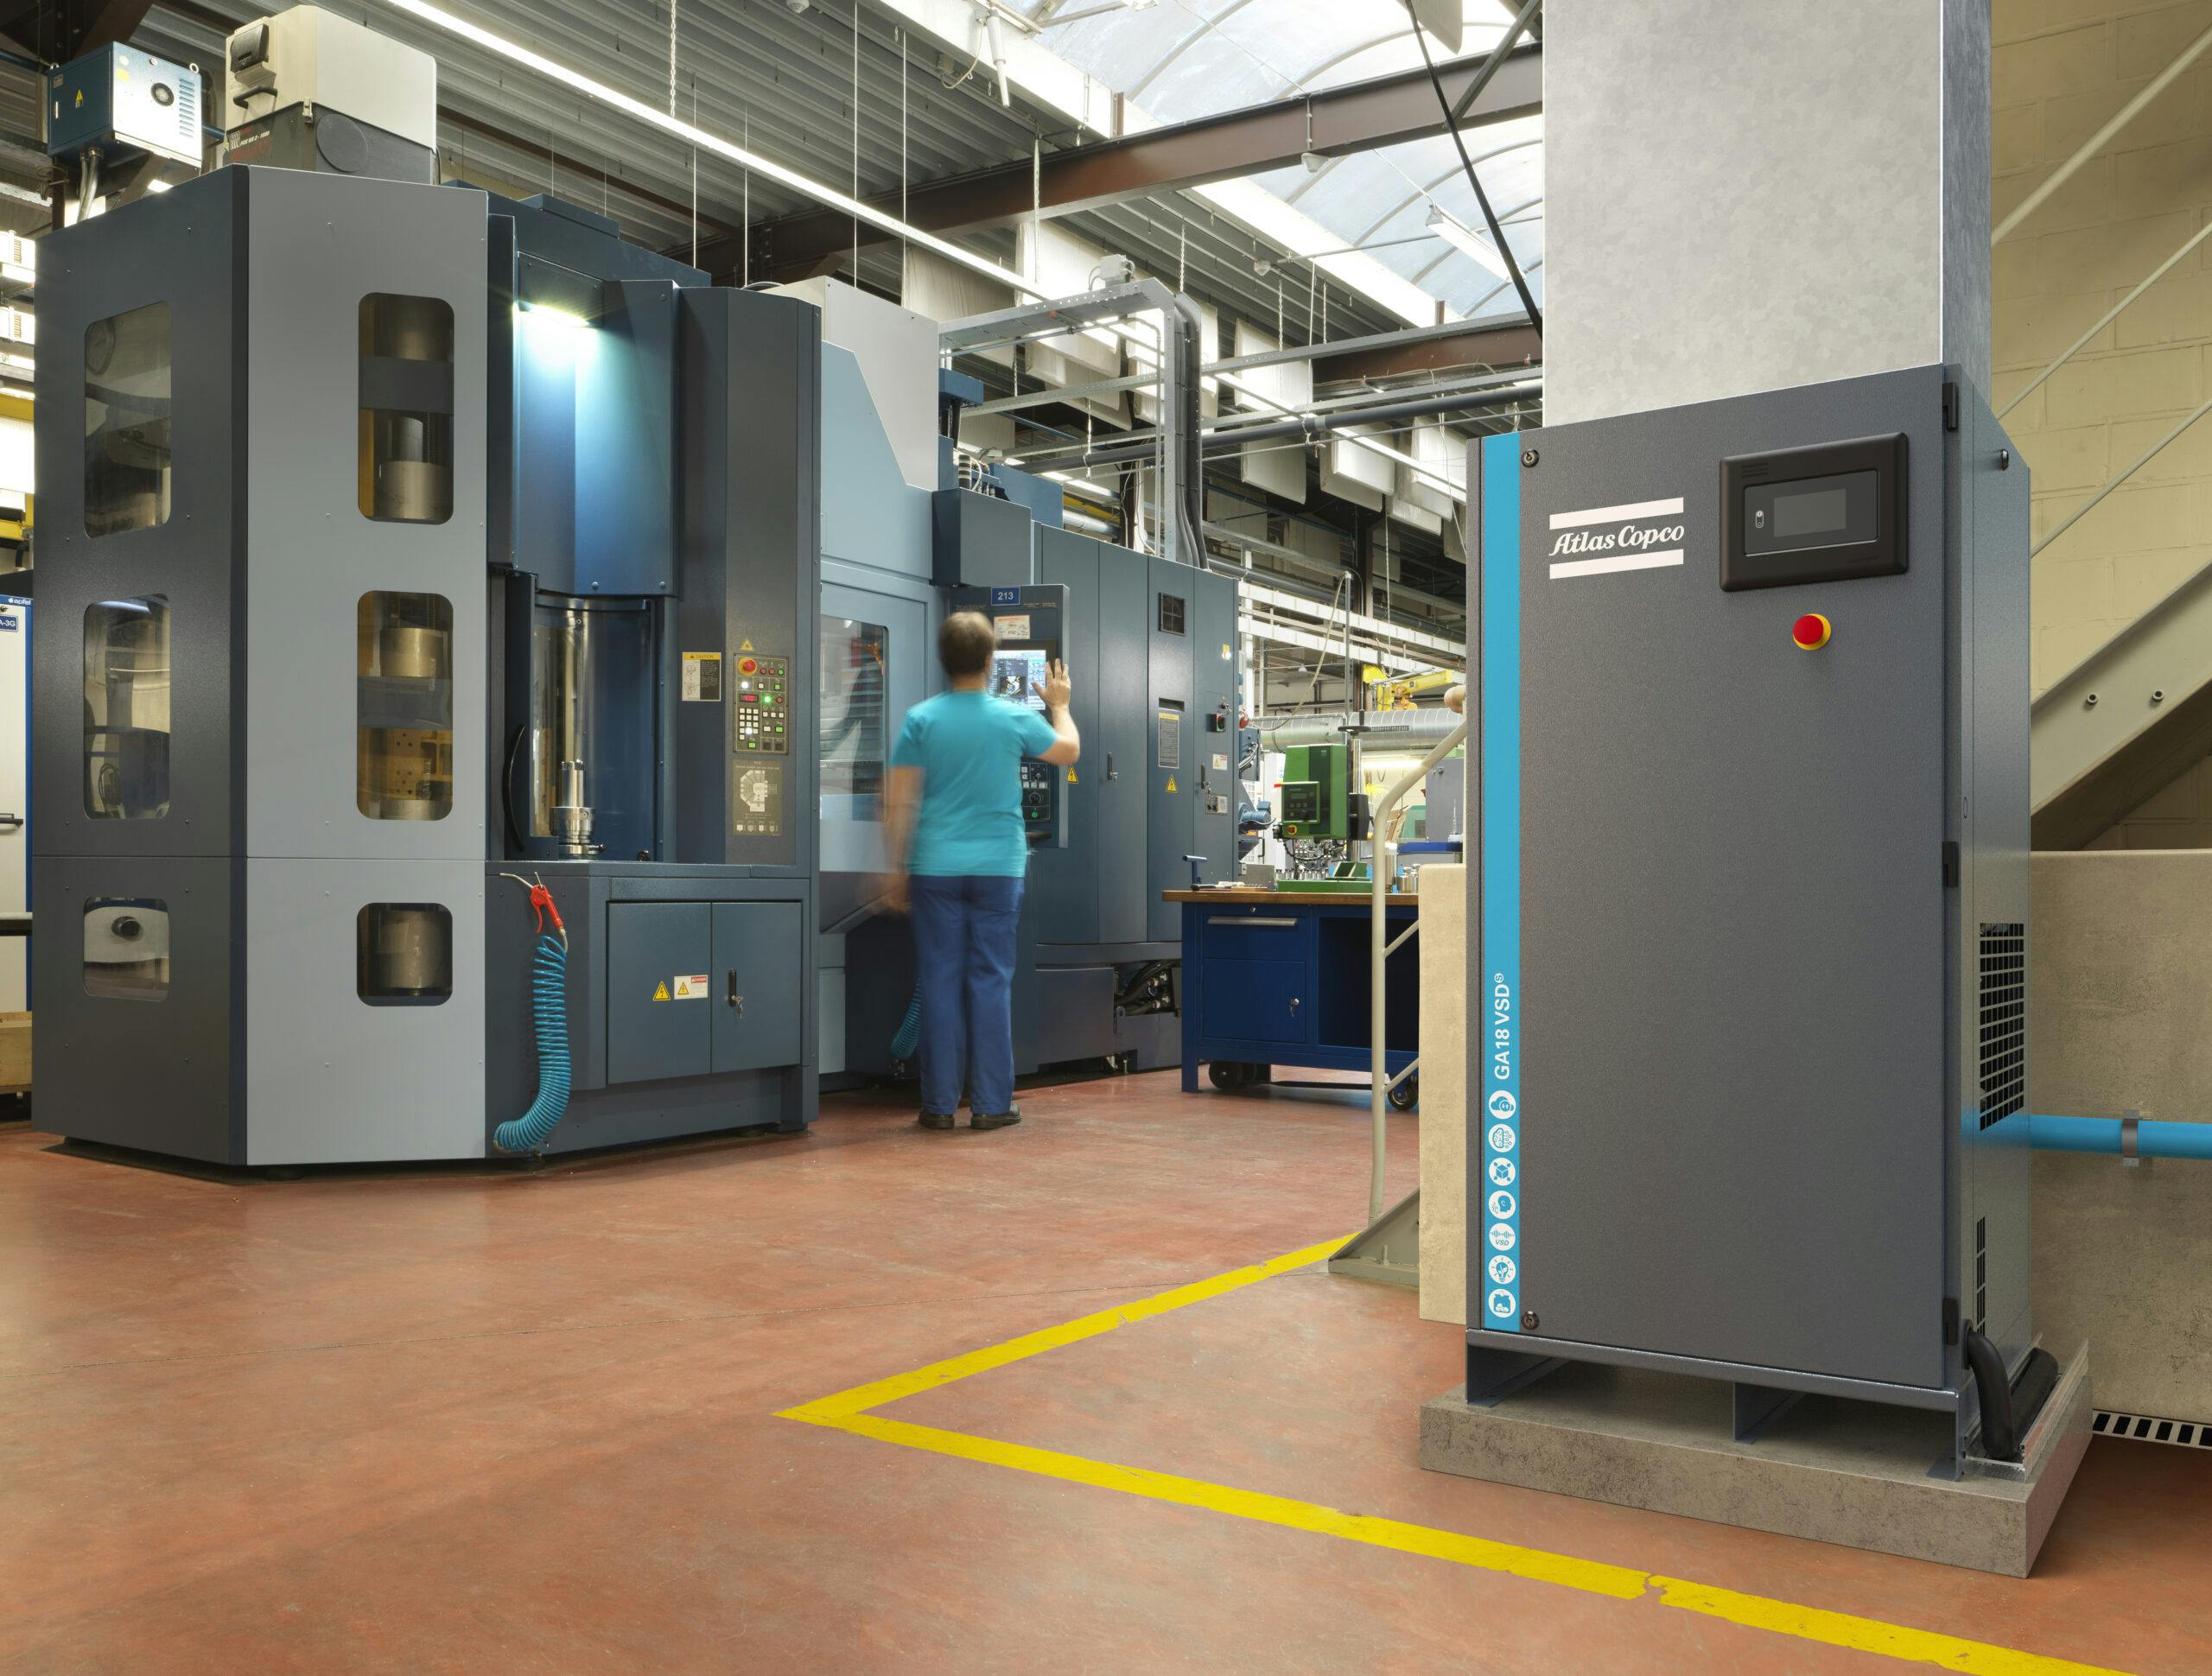 Atlas Copco Kompressor i produksjonshall, medarbeider jobber med produksjon i CNC maskin. Kompressor er koblet til airnet rør.